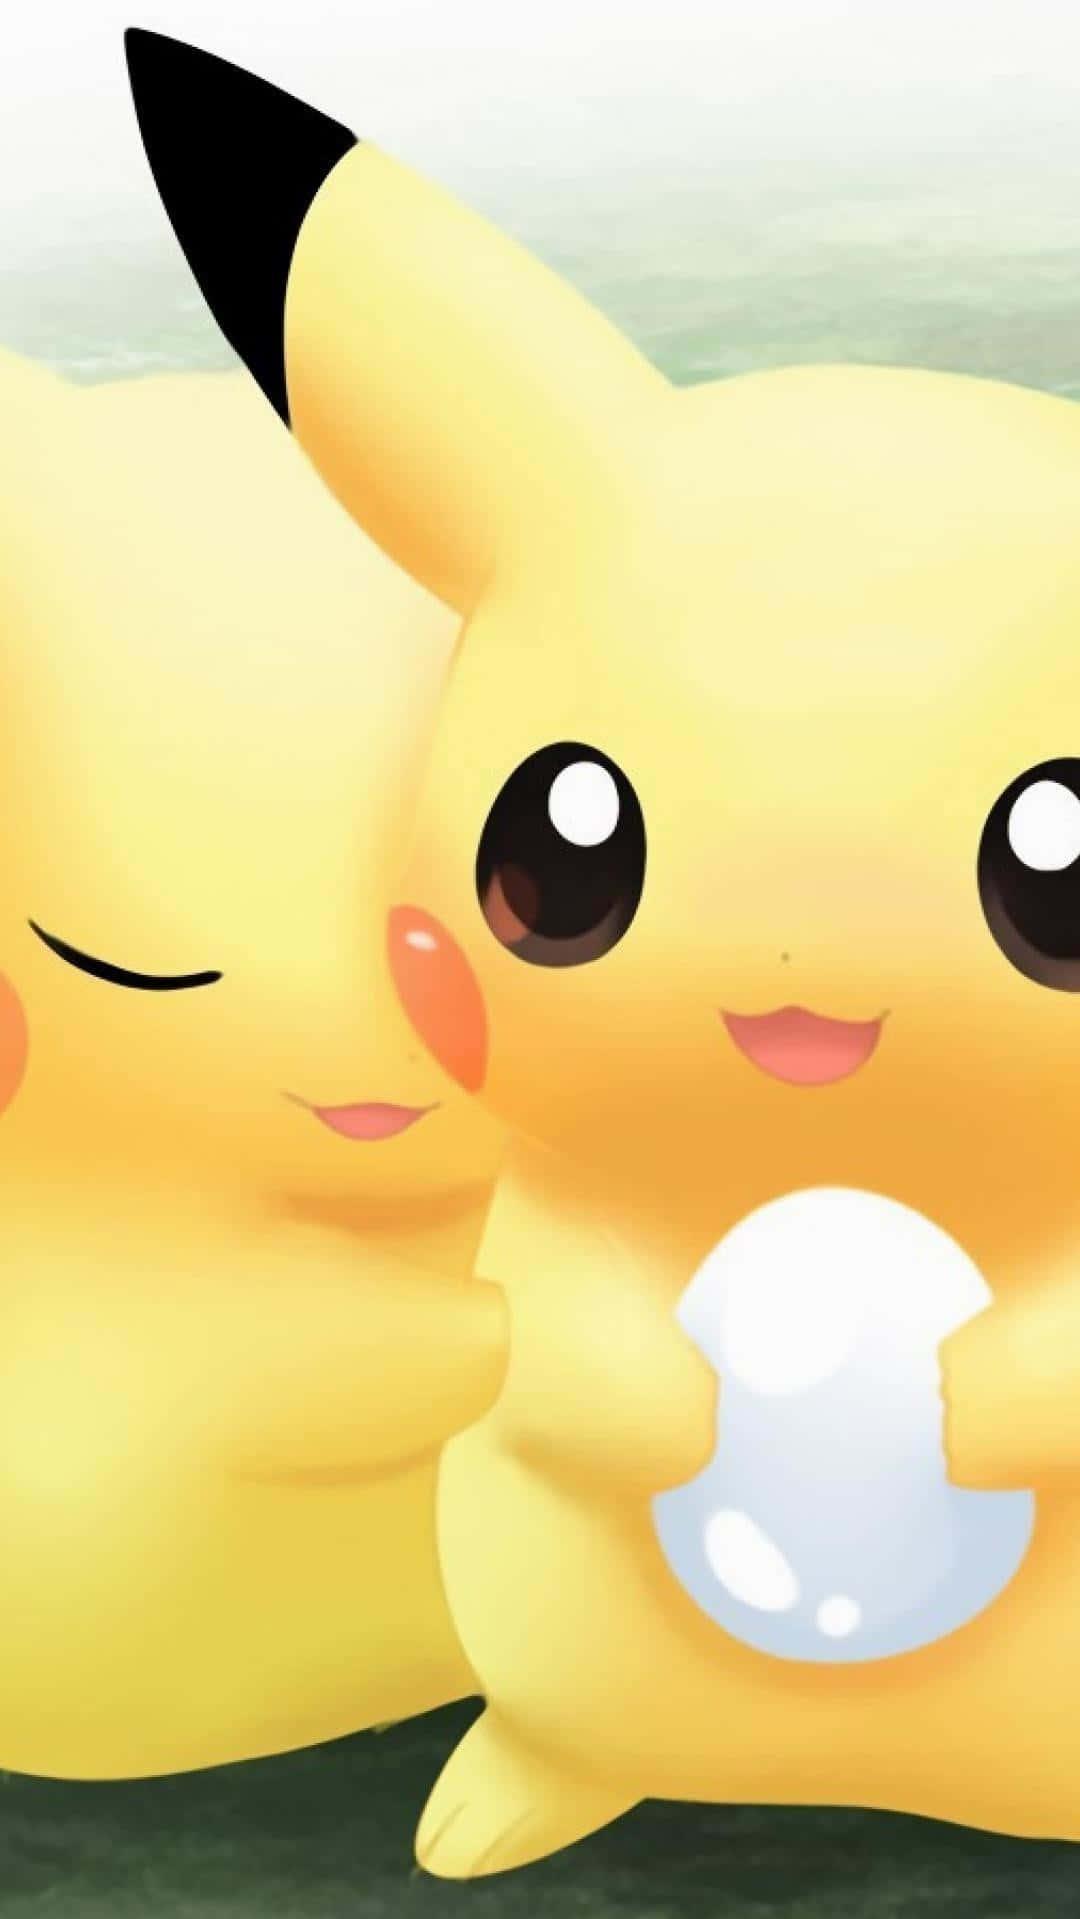 Baby Pikachu Is Too Cute Wallpaper